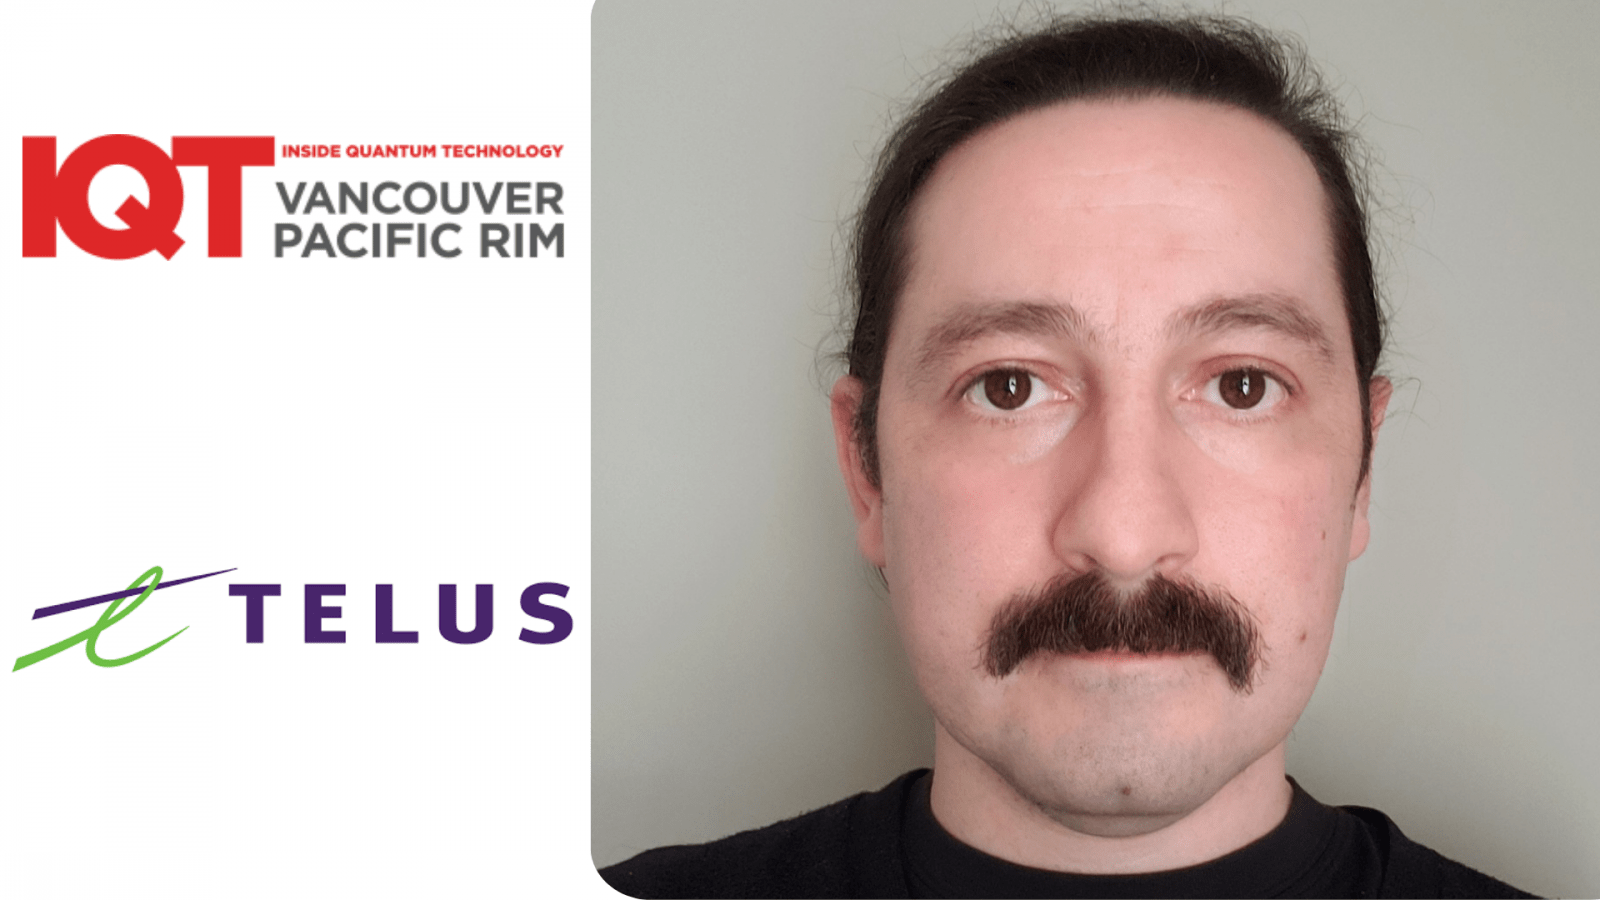 Ilijc Albanese, TELUSin vanhempi insinööri, on IQT Vancouver/Pacific Rim Speaker vuoden 2024 konferenssissa.